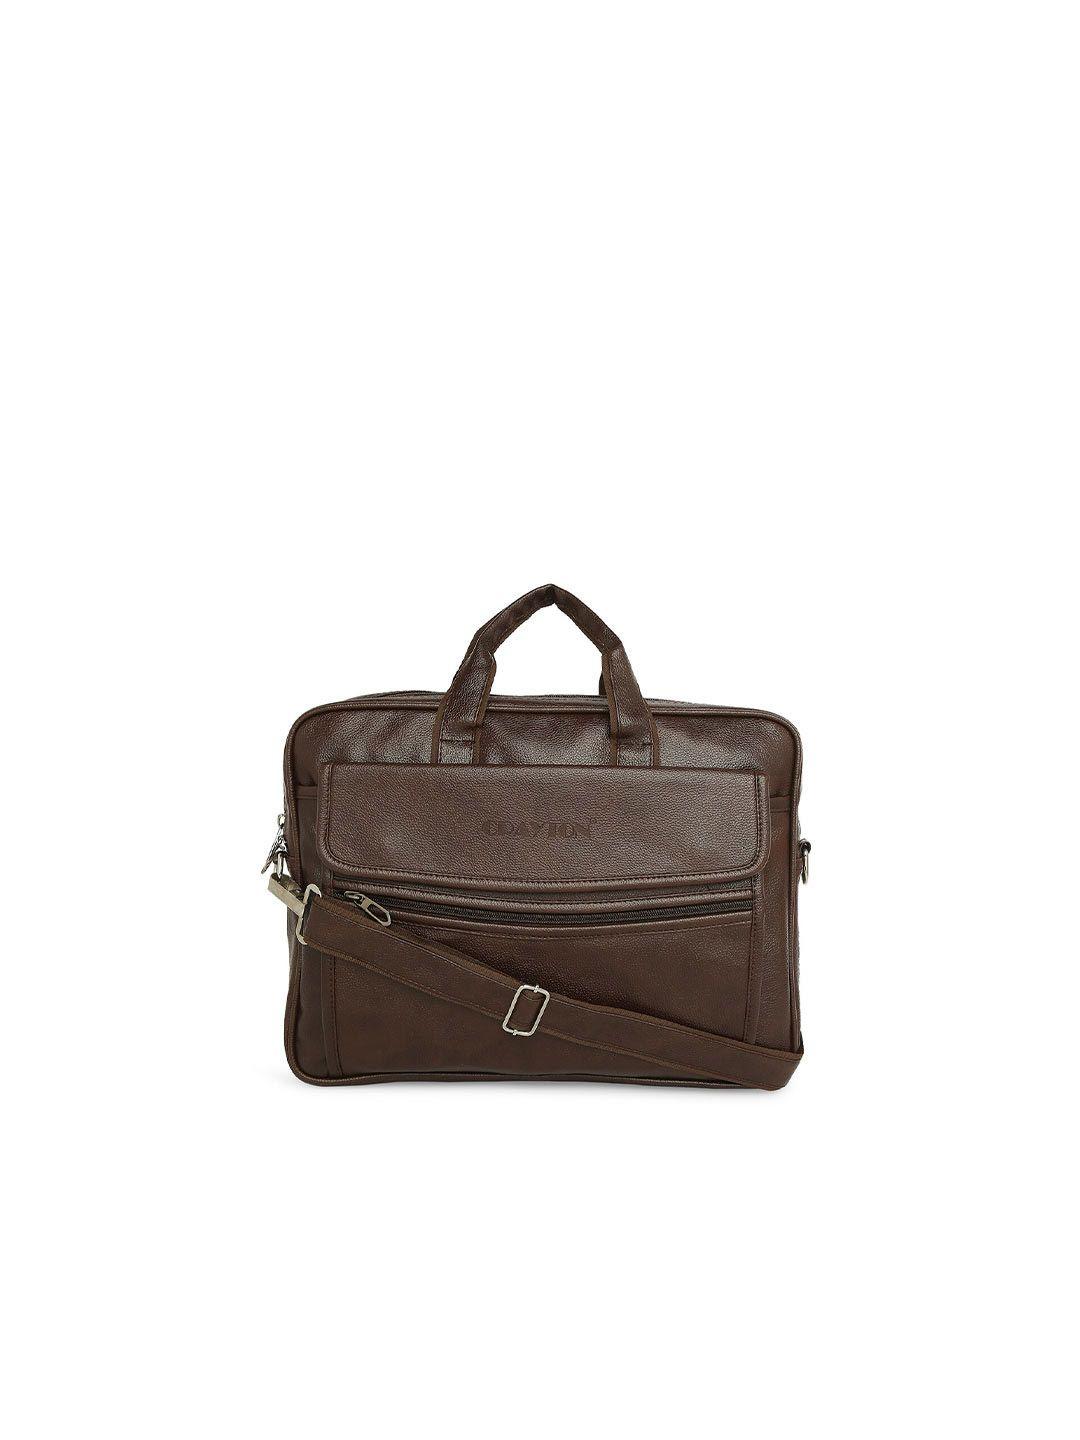 crayton unisex brown laptop bag